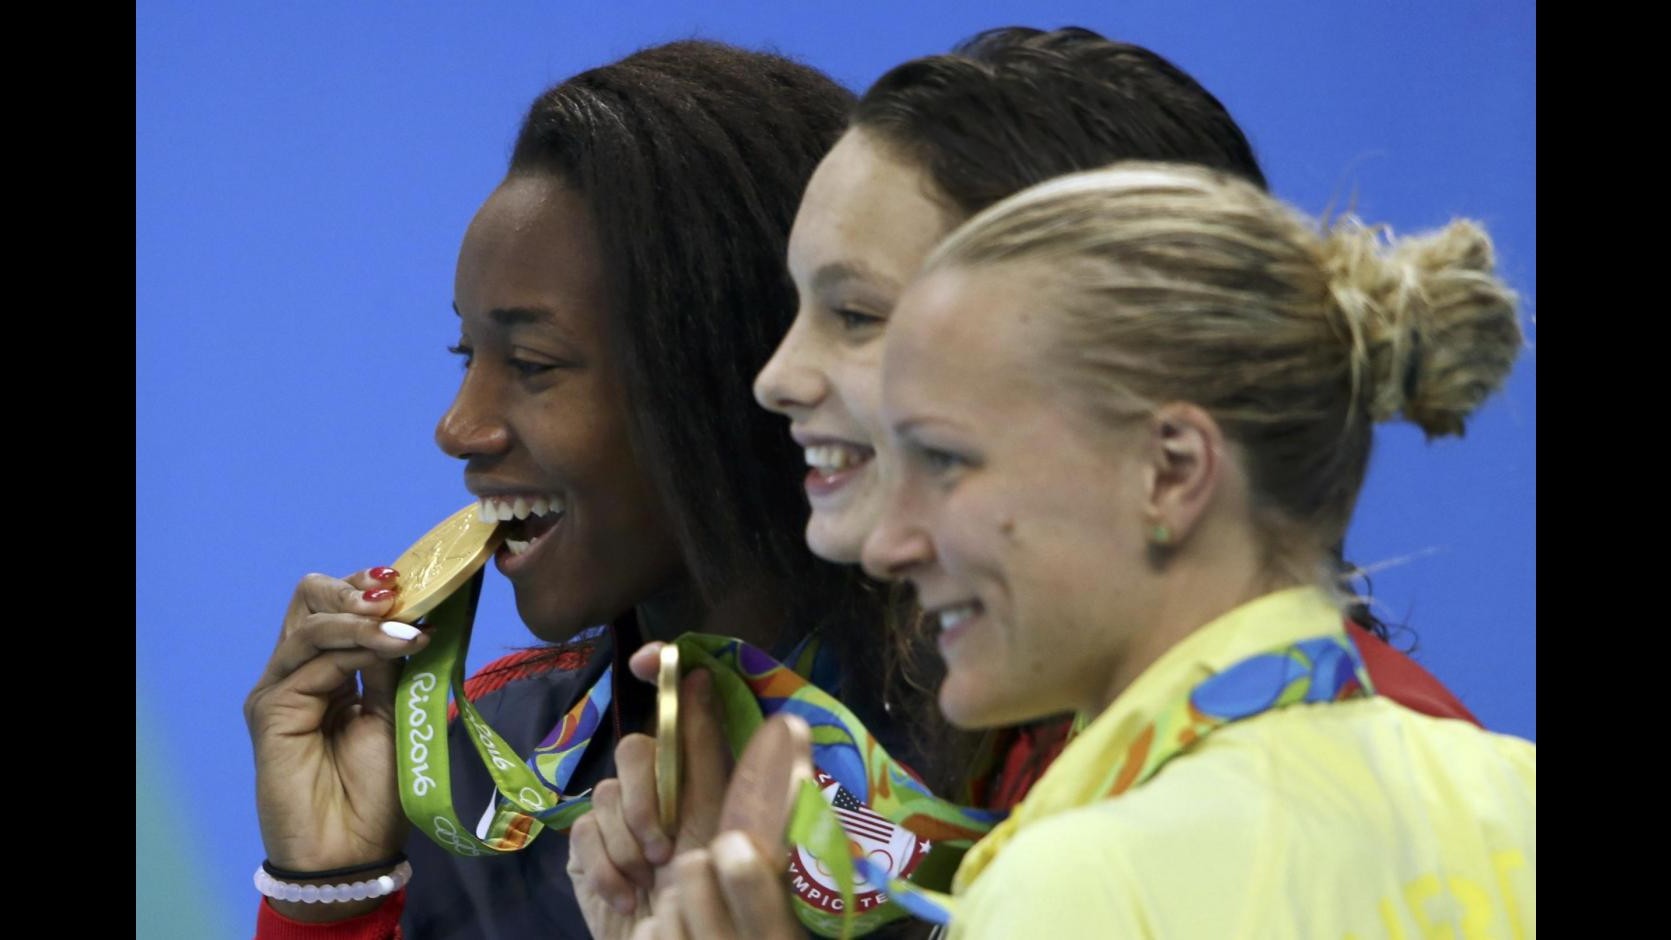 FOTO Nuoto, Simone Manuel nella storia: 1° oro per un’afroamericana